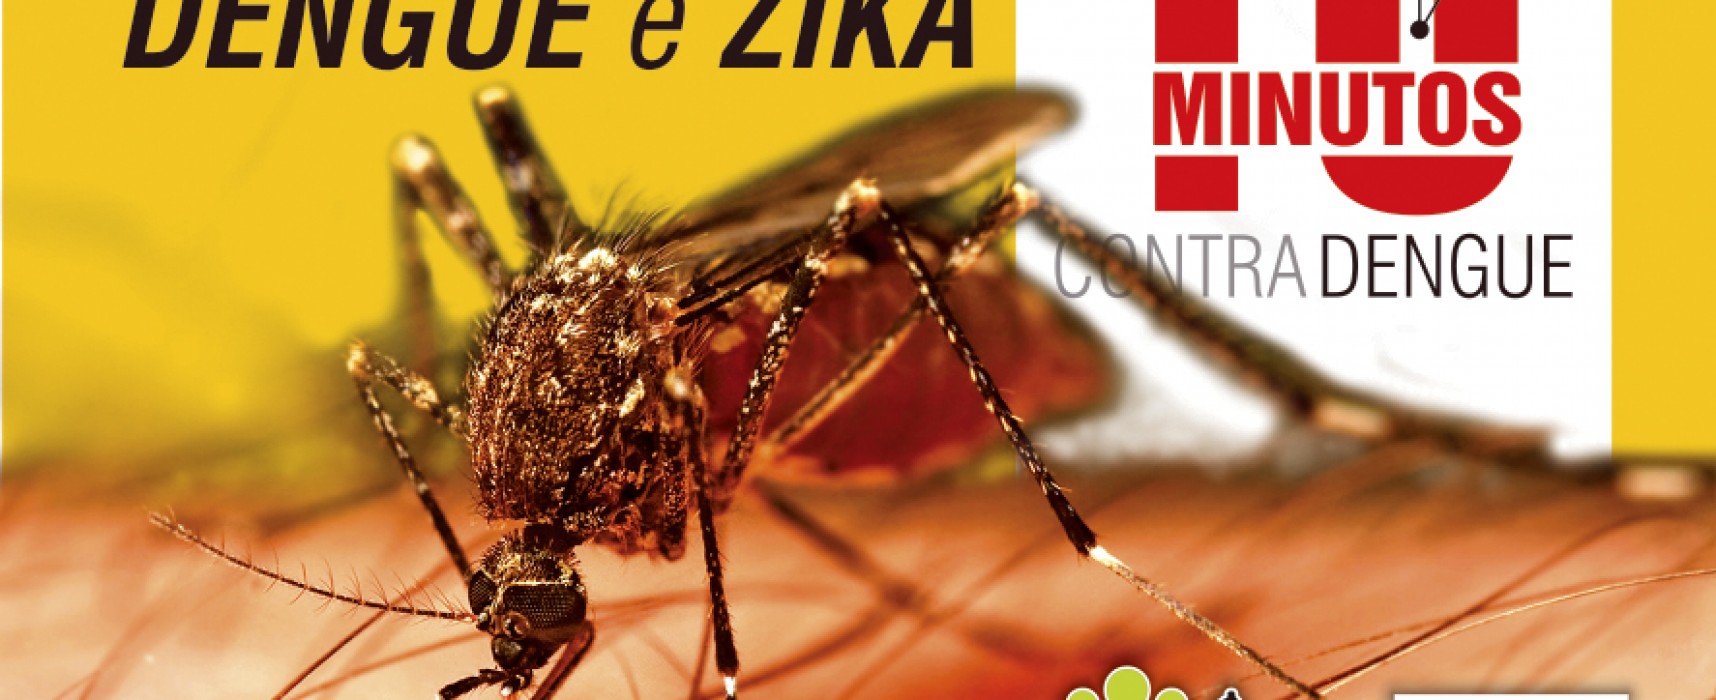 Prefeitura de Ilhabela realiza campanha “10 Minutos”   contra doenças transmitidas pelo mosquito Aedes aegypti